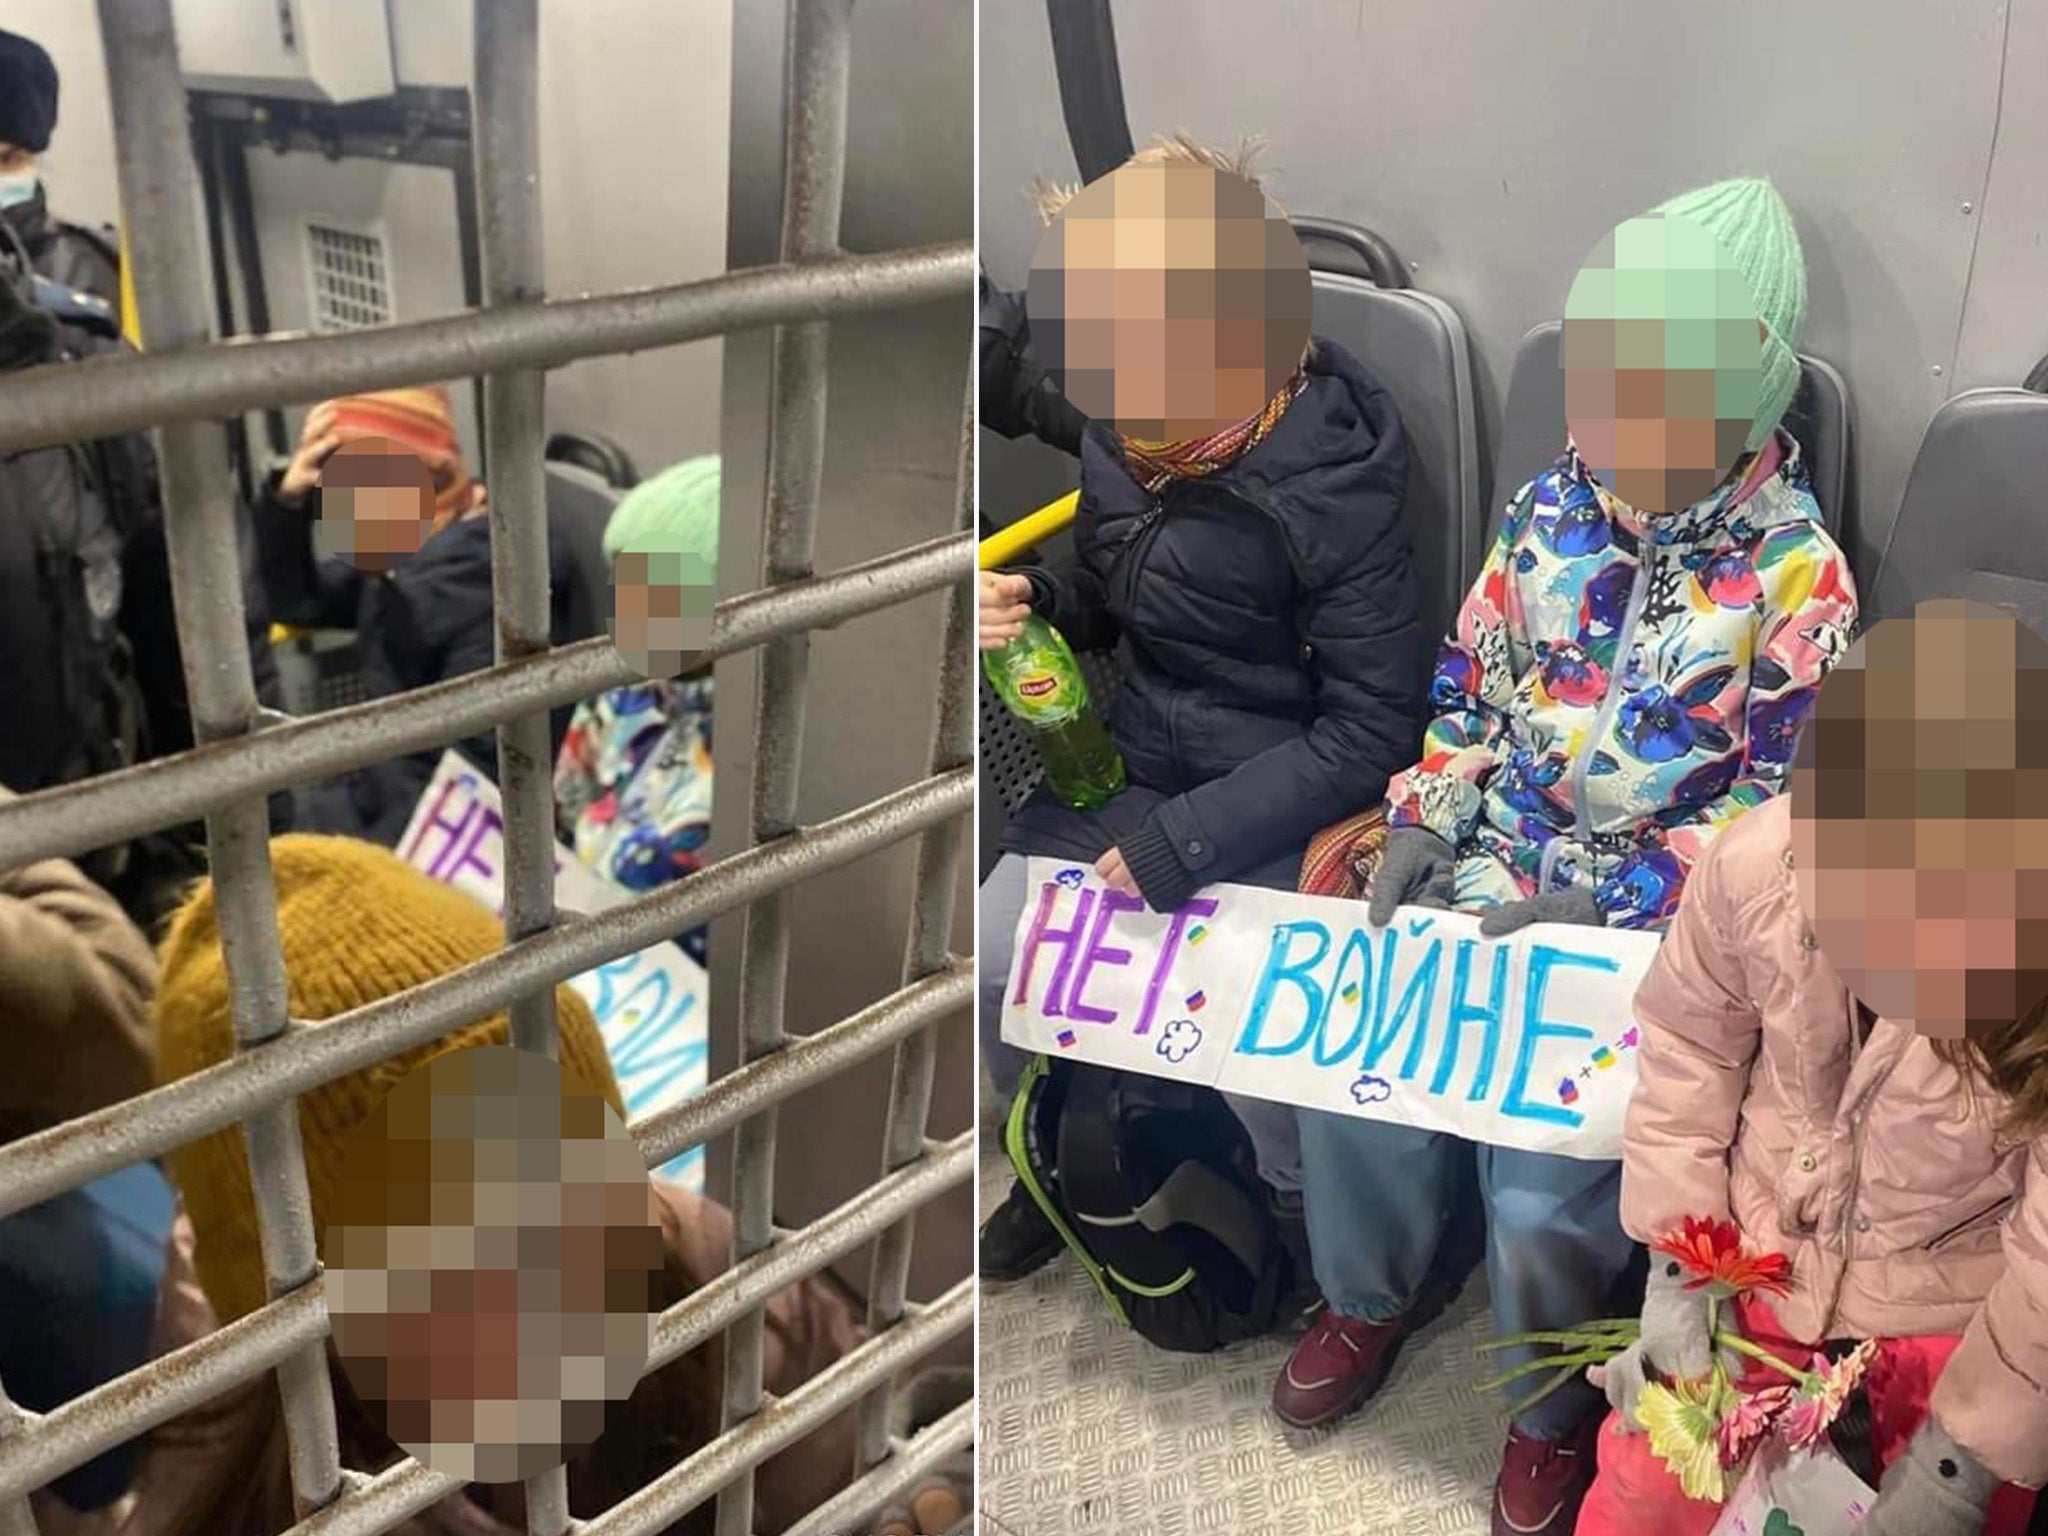 Cinco niños fueron supuestamente arrestados en Moscú junto a sus madres después de llevar flores y carteles contra la guerra a la embajada ucraniana